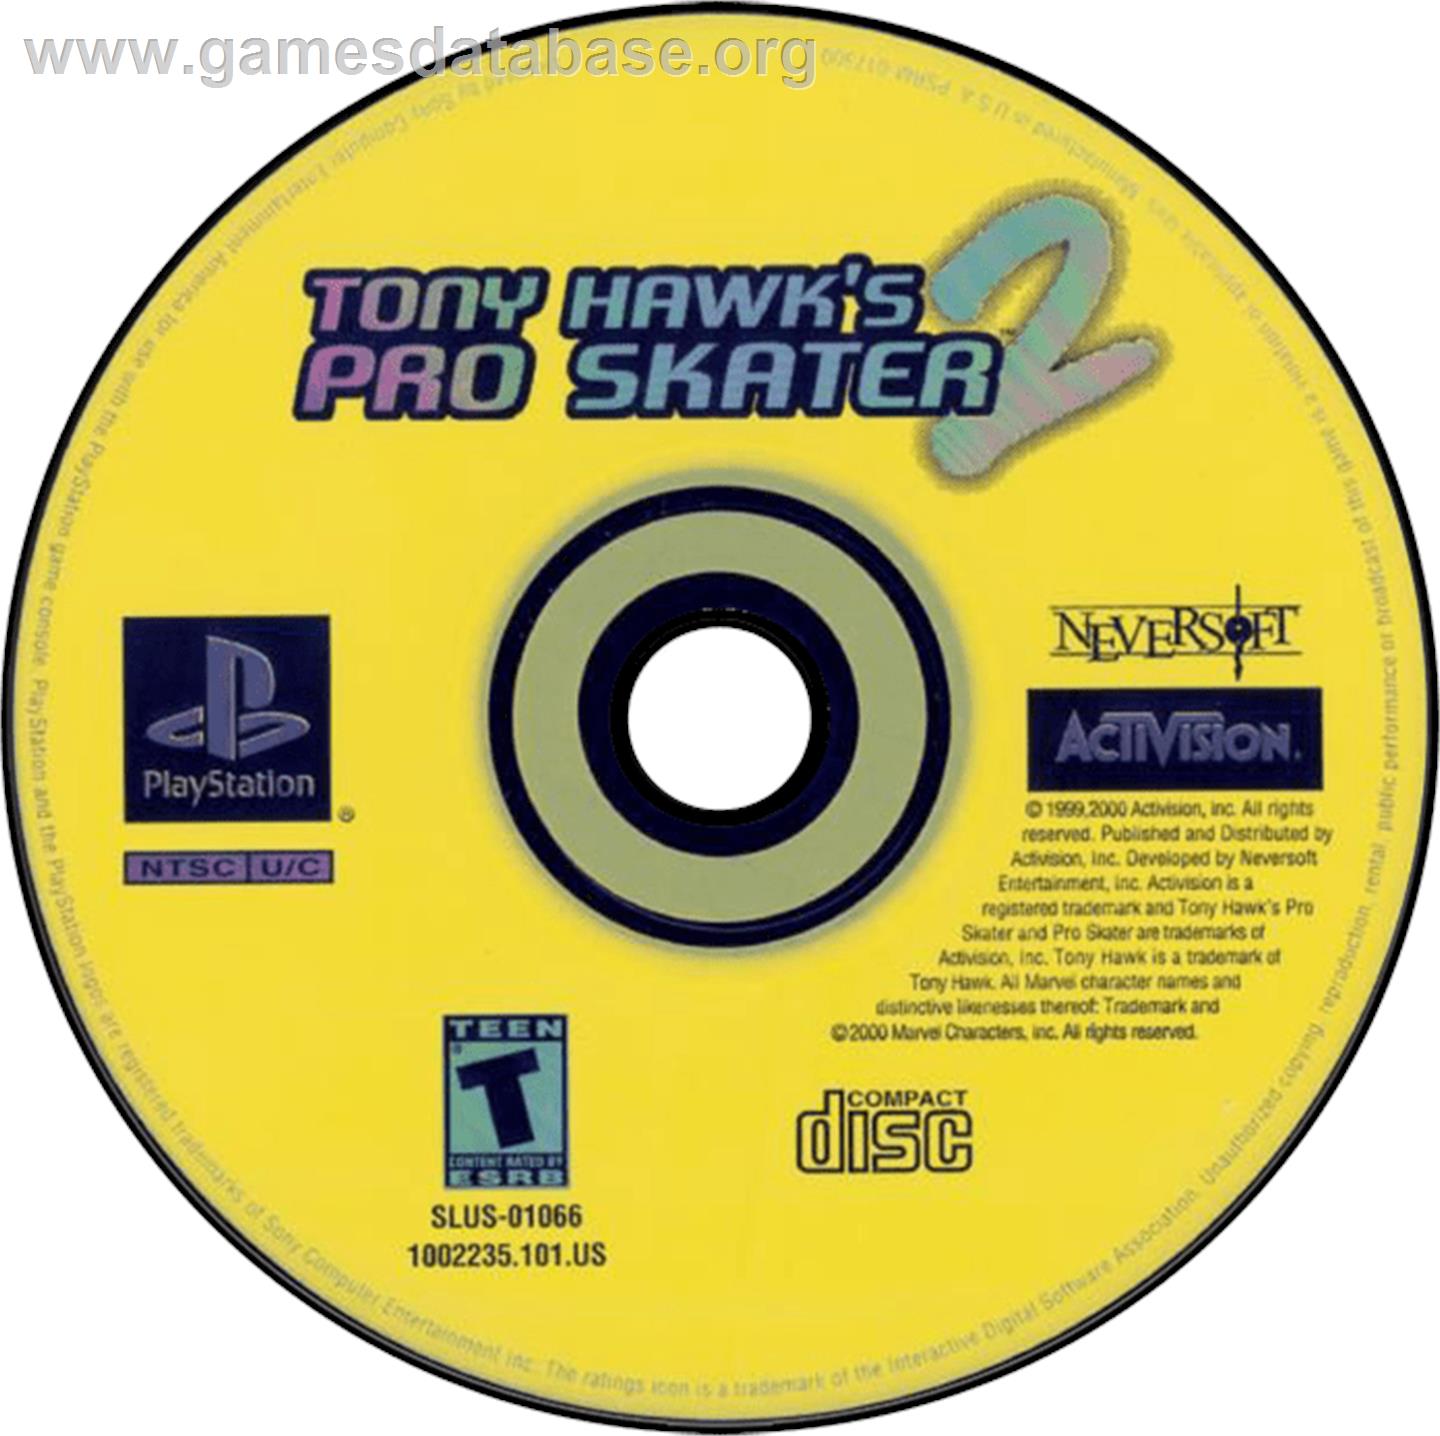 Tony Hawk's Pro Skater 2 - Sony Playstation - Artwork - Disc